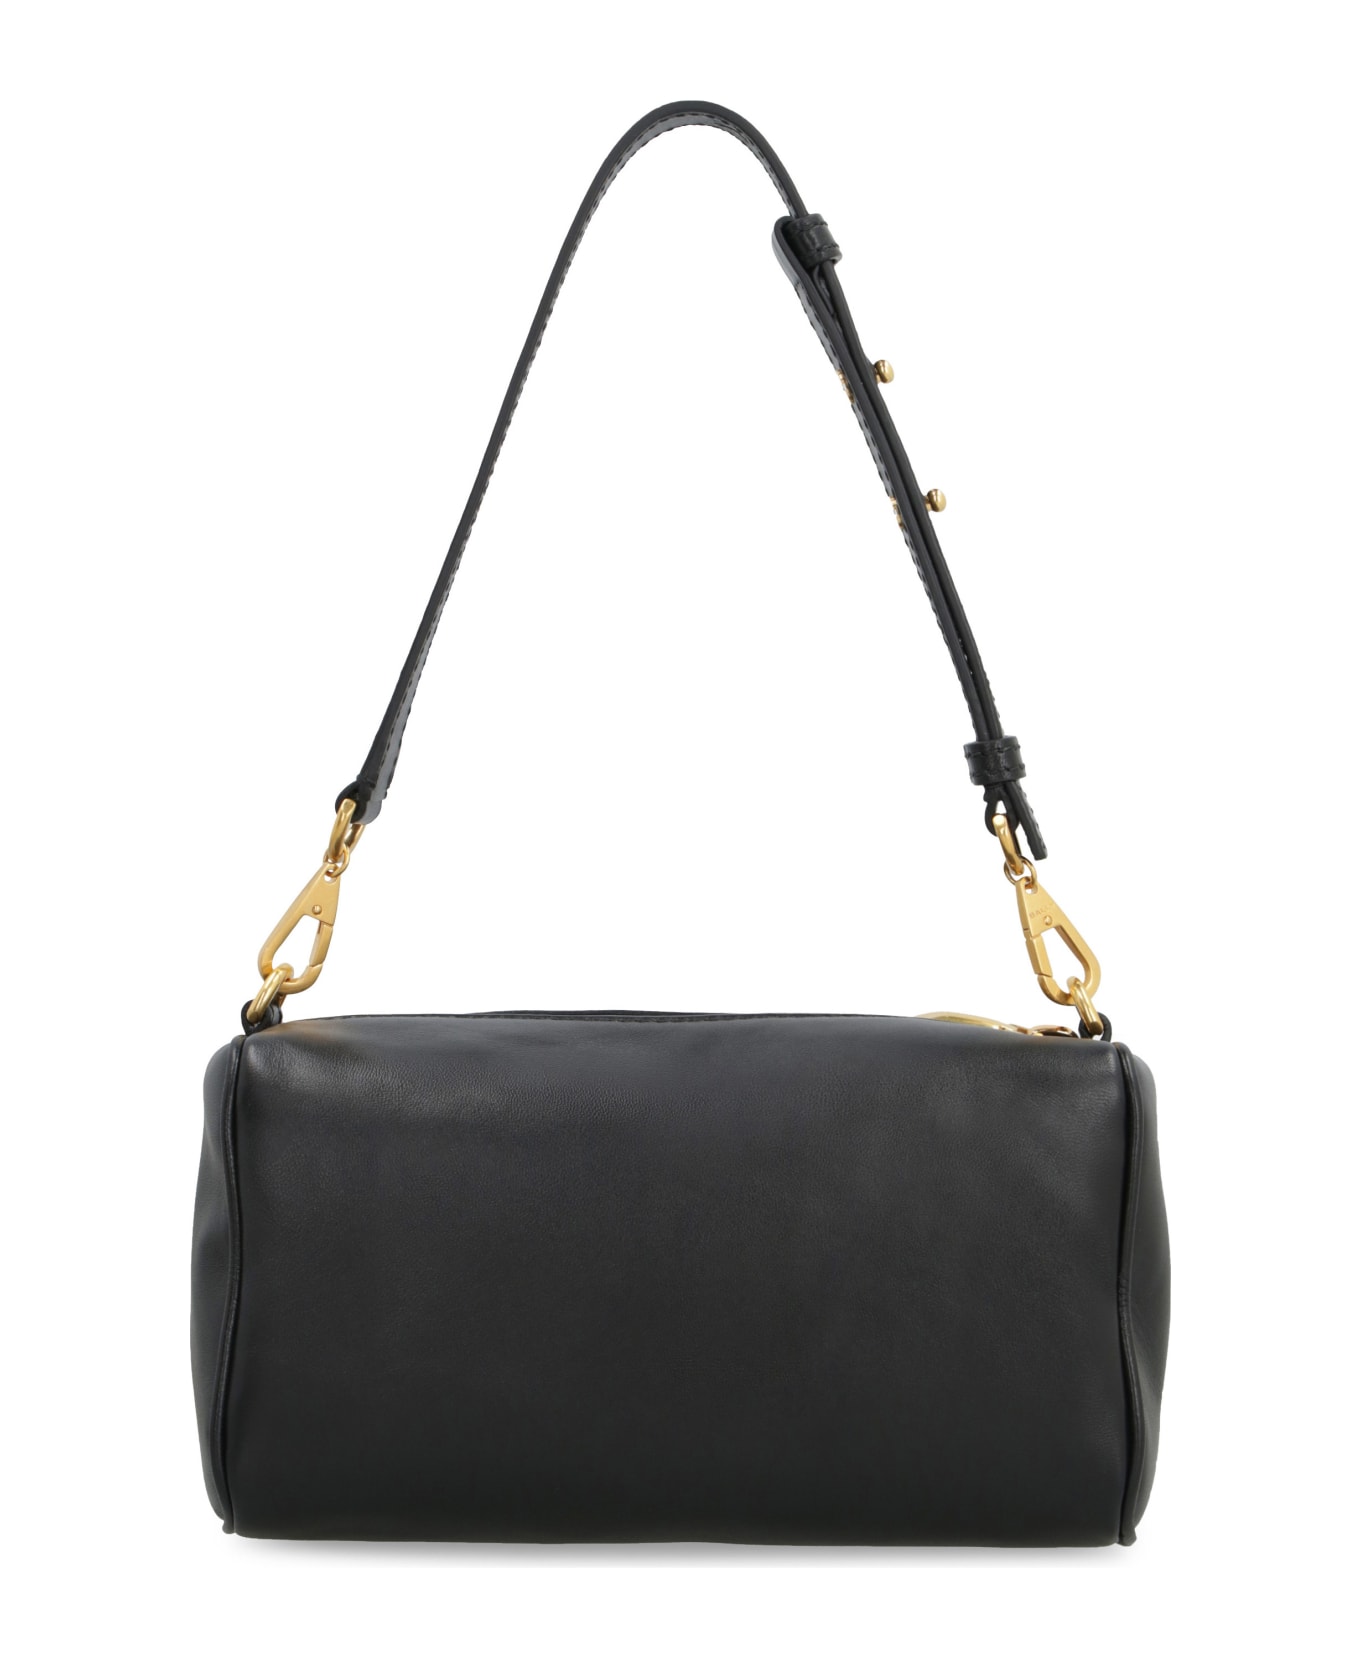 Bally Emblem Rox Leather Shoulder Bag - Black